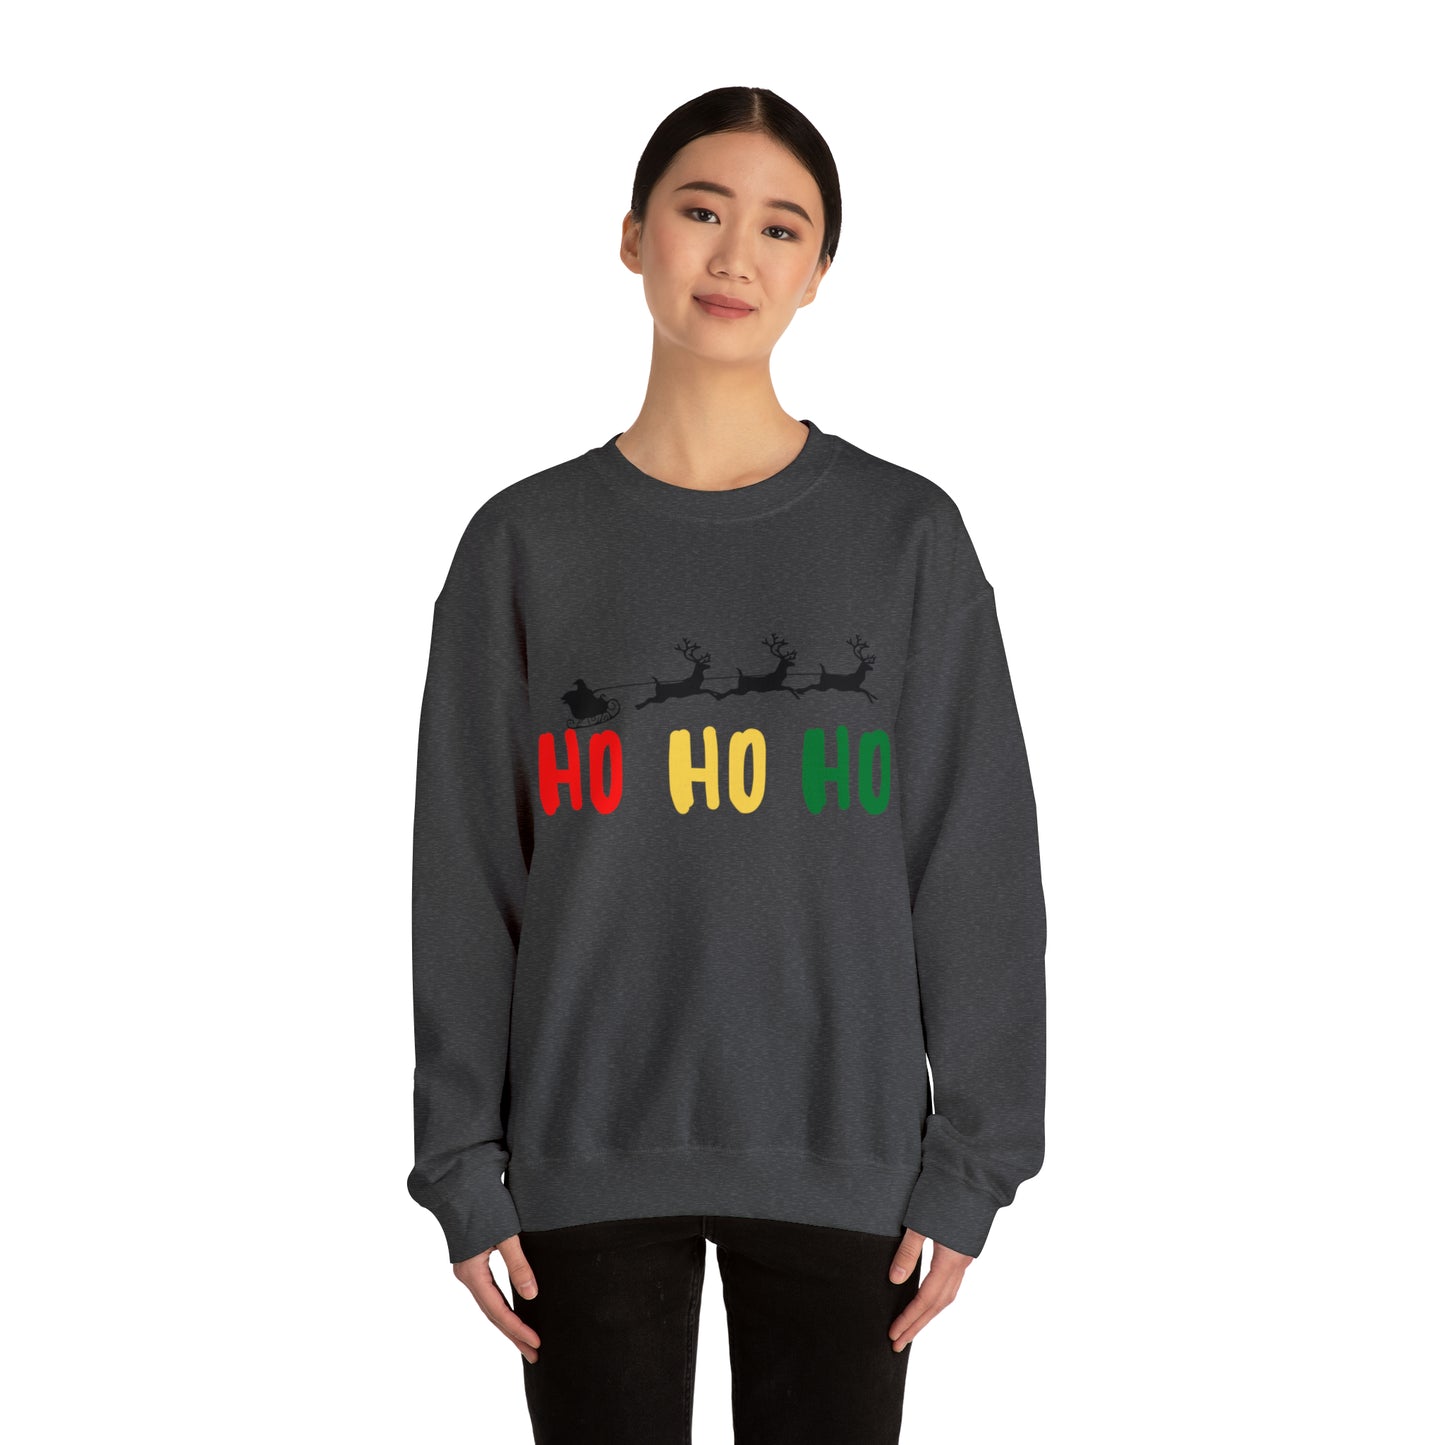 Ho Ho Ho Christmas Crewneck Sweatshirt